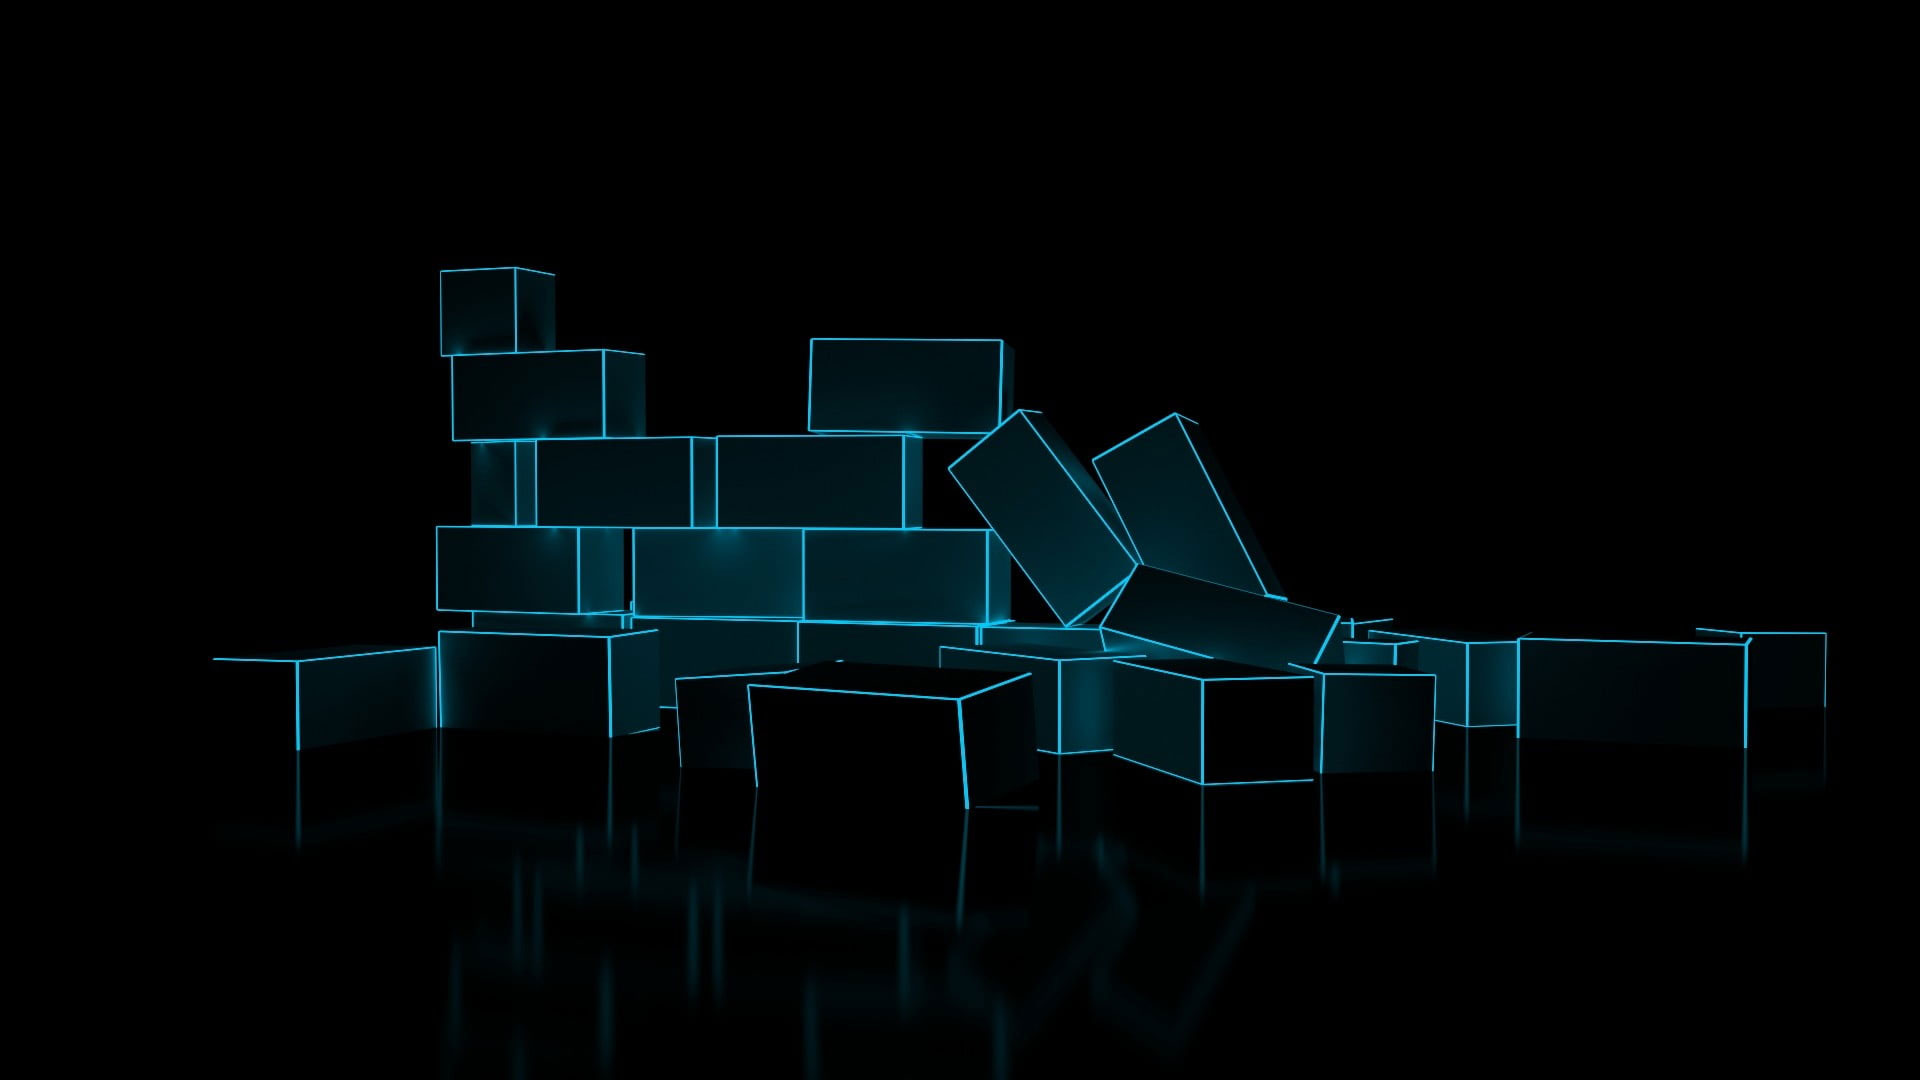 Glow-in-the-dark bricks wallpaper, digital art, minimalism, 3D, CGI, glowing